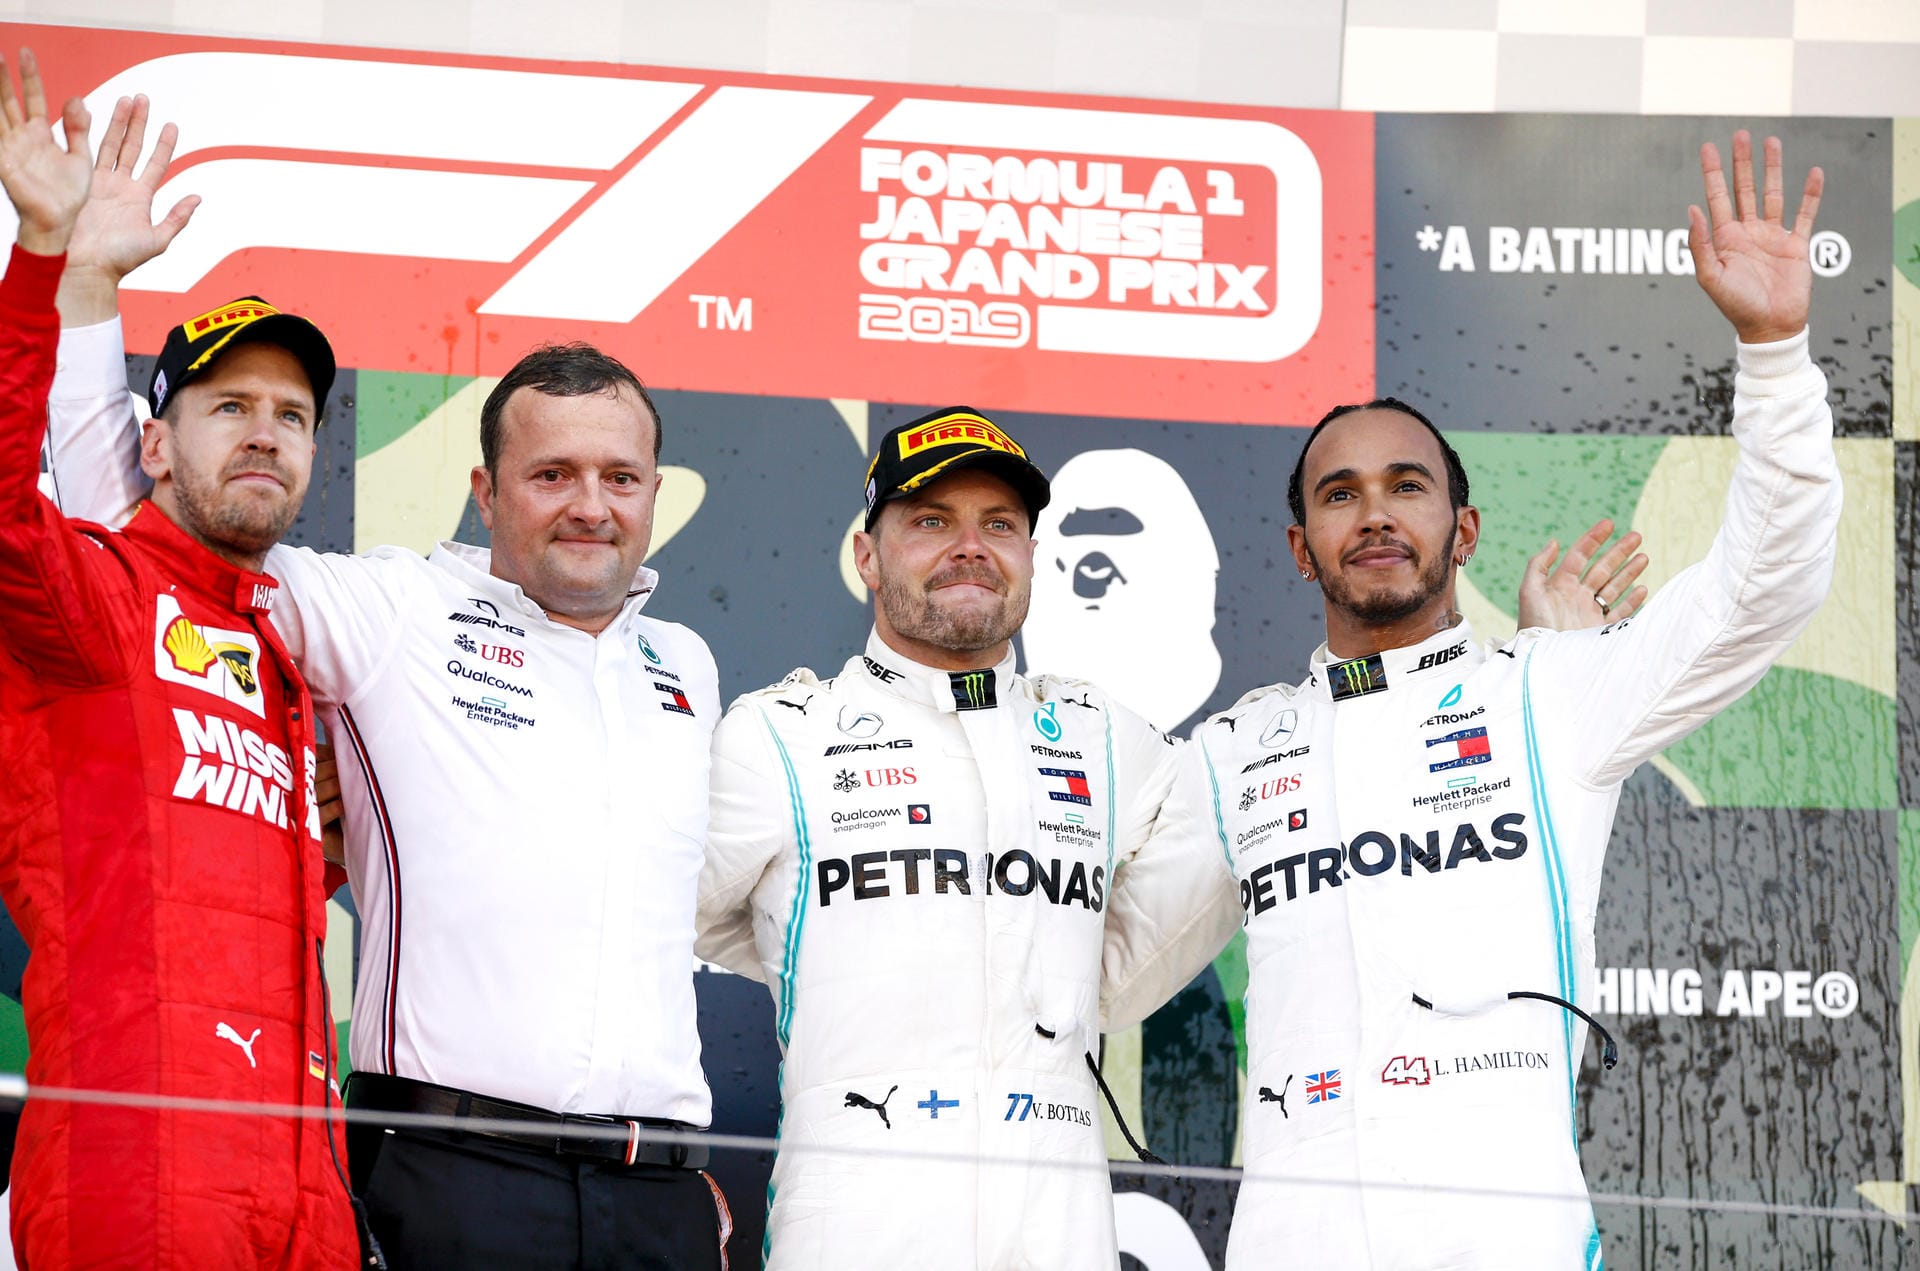 Sieger Bottas mit dem Zweitplatzierten Vettel und Hamilton auf Platz 3